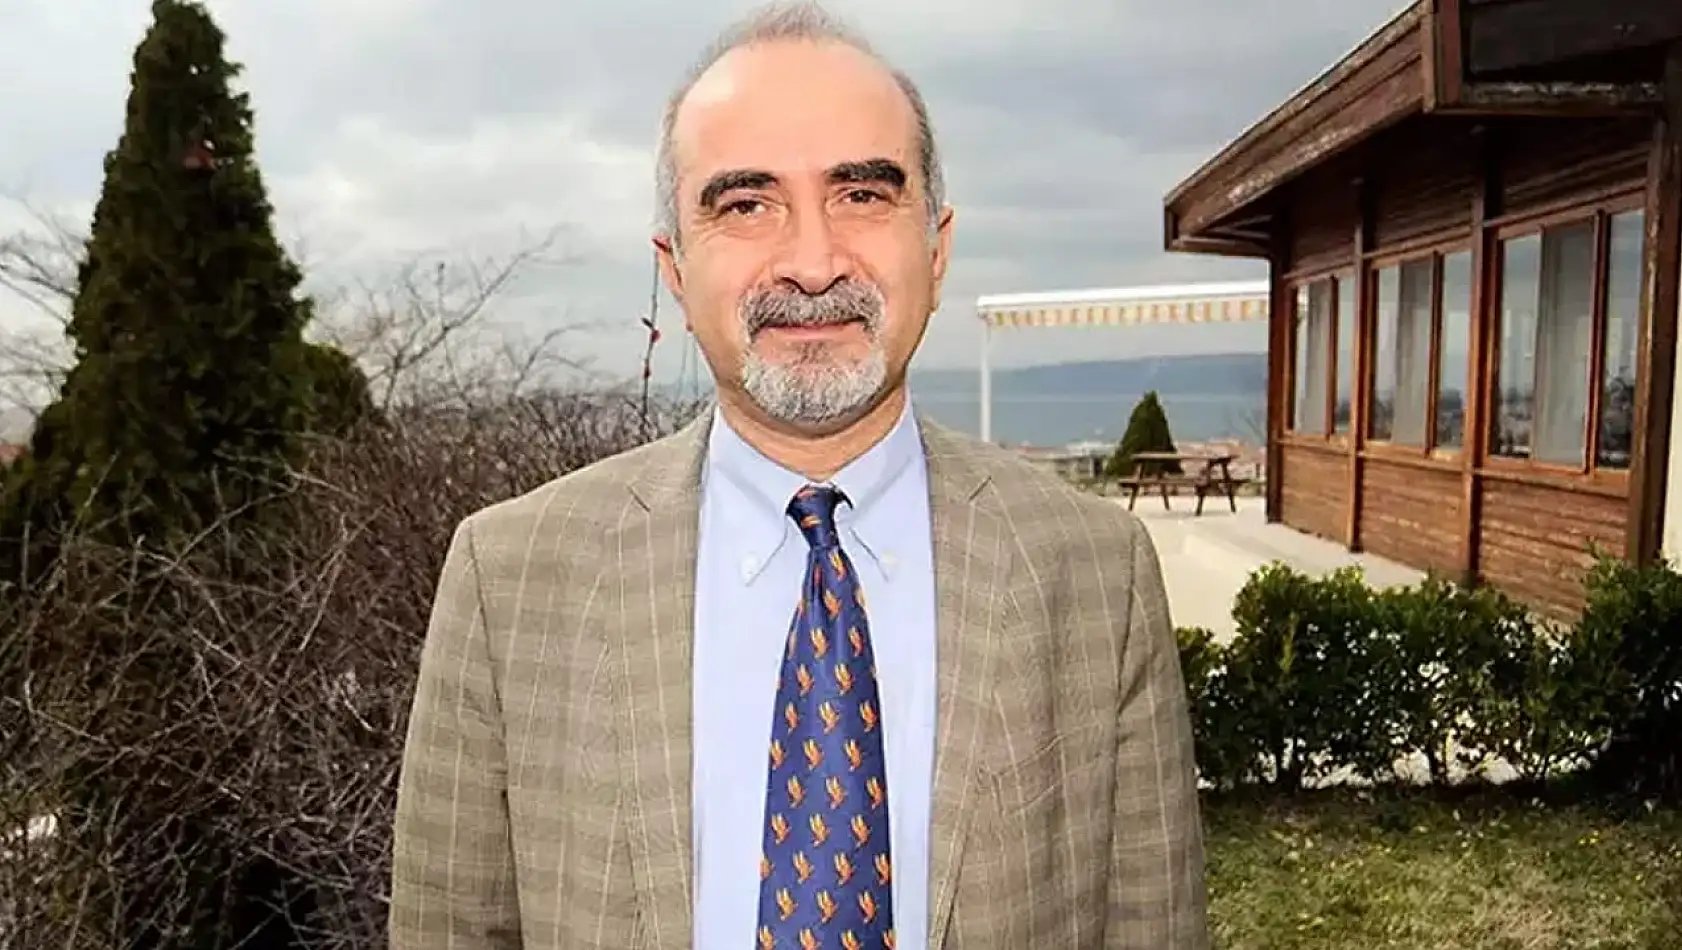 Türkiye'nin önde gelen deprem bilimcisi Doğan Kalafat neden vefat etti?